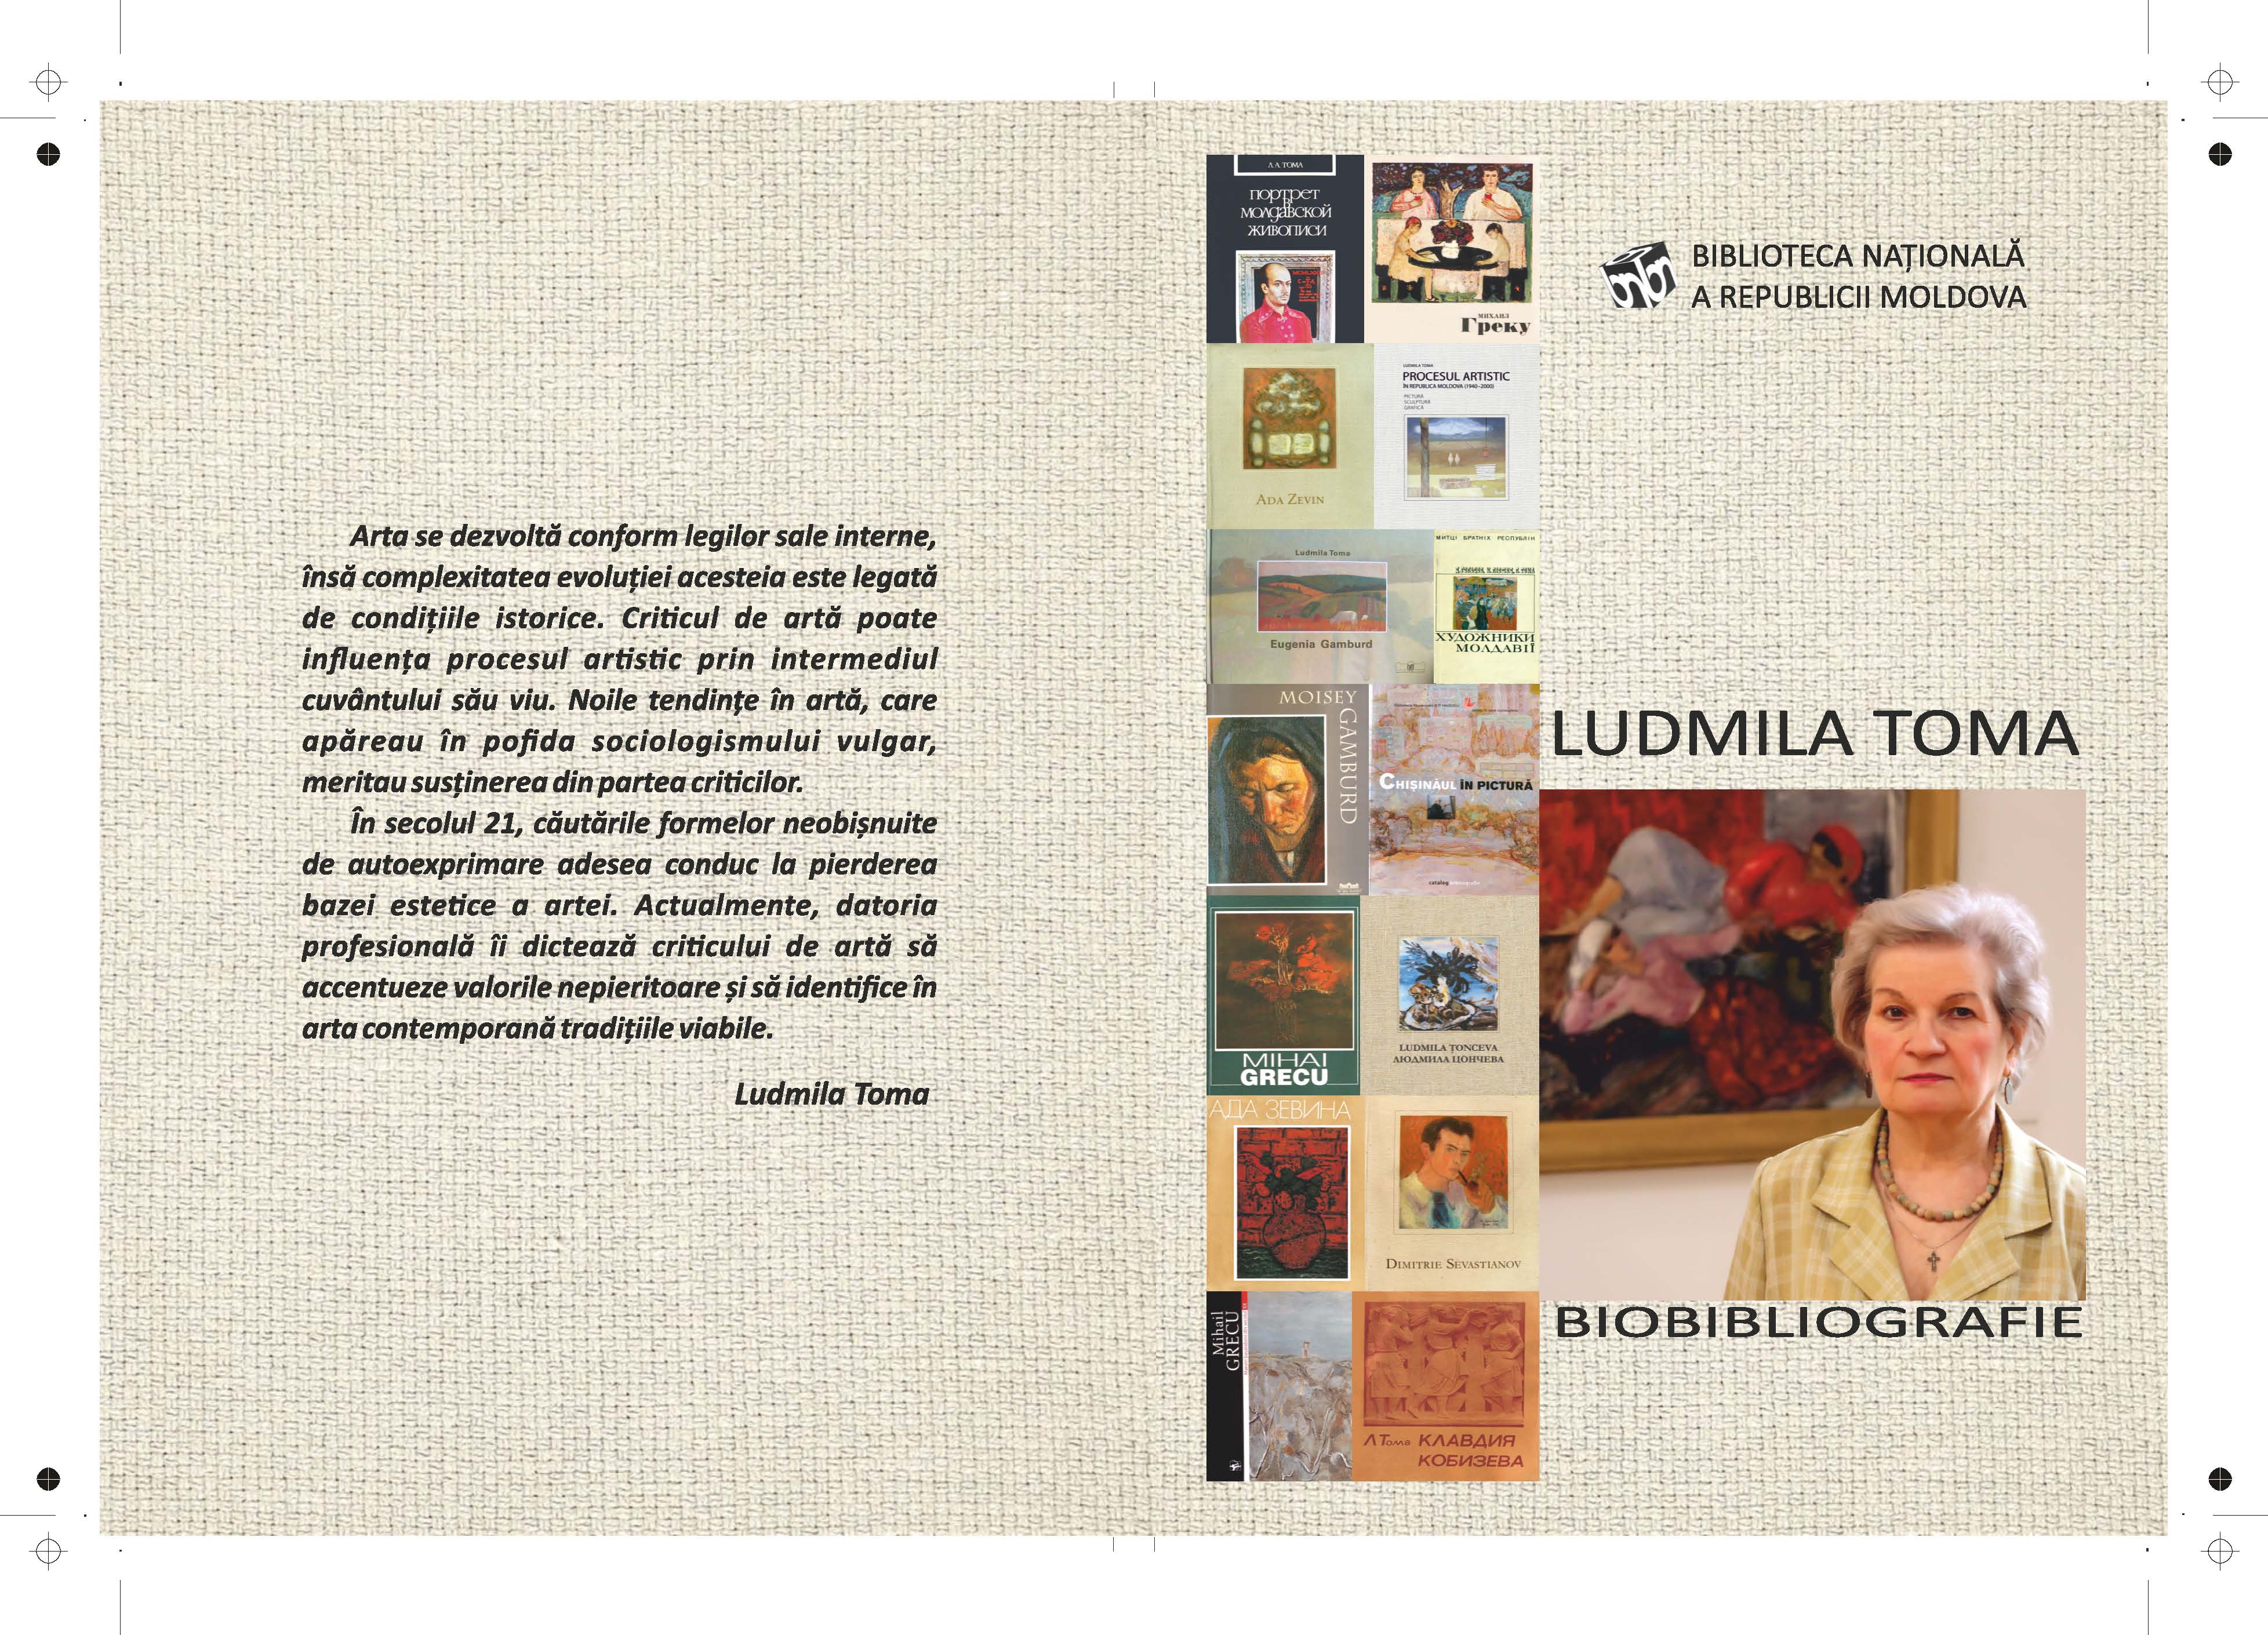 Biobibliografia Ludmila Toma